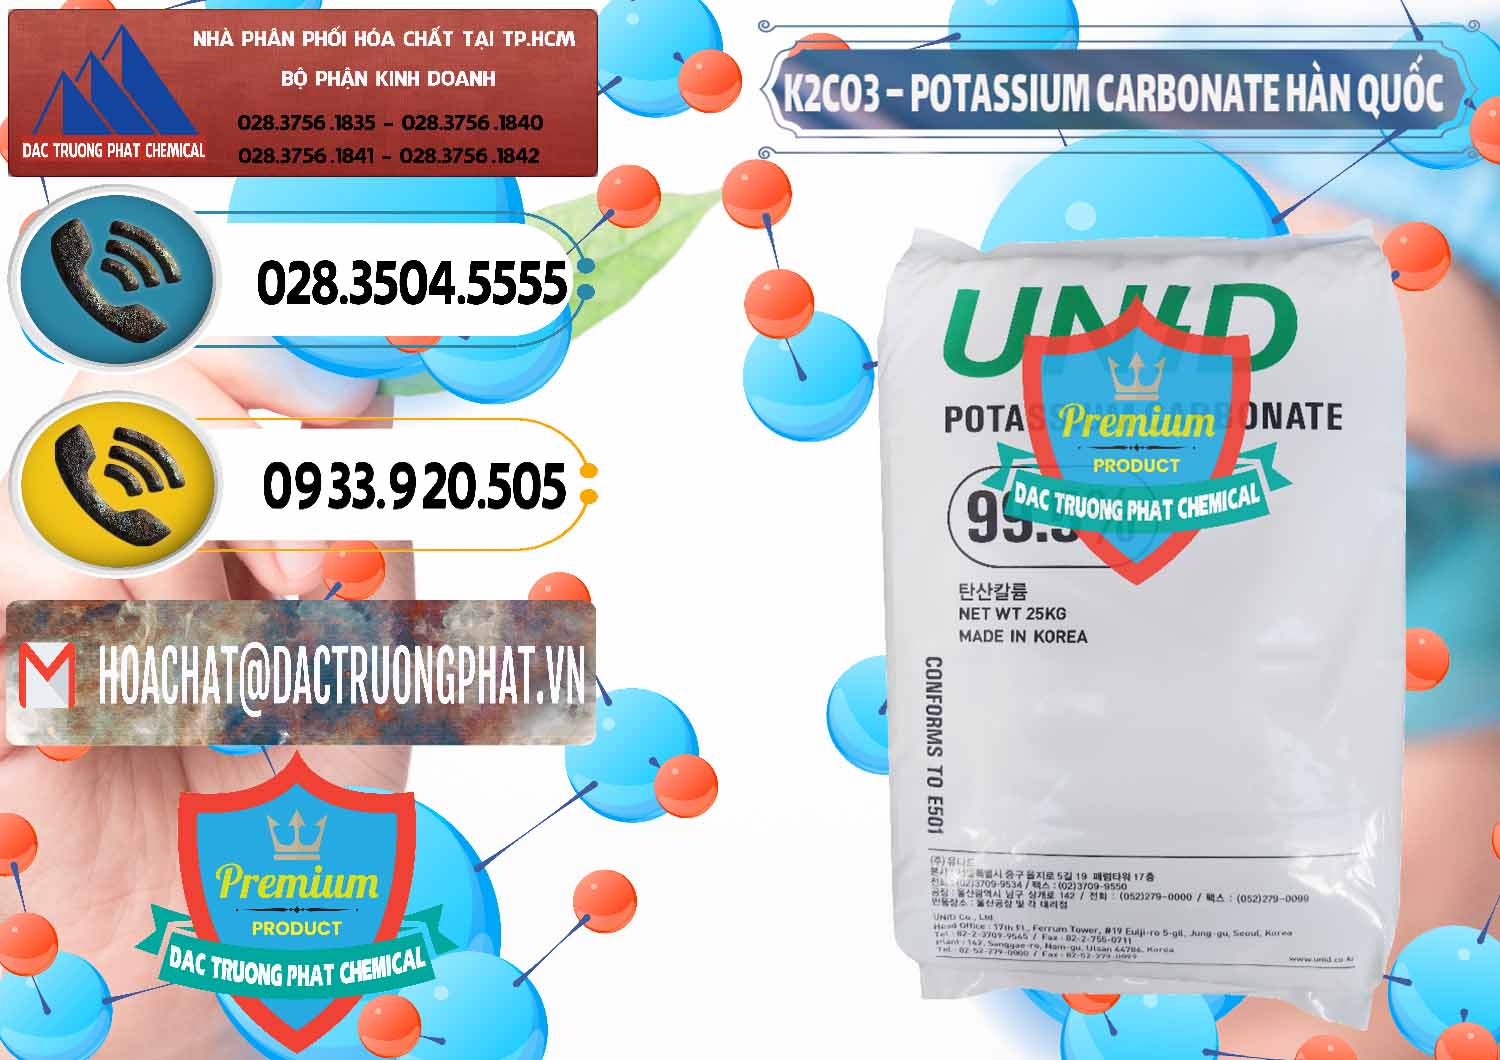 Nơi chuyên cung cấp - bán K2Co3 – Potassium Carbonate Unid Hàn Quốc Korea - 0081 - Công ty phân phối ( cung cấp ) hóa chất tại TP.HCM - hoachatdetnhuom.vn